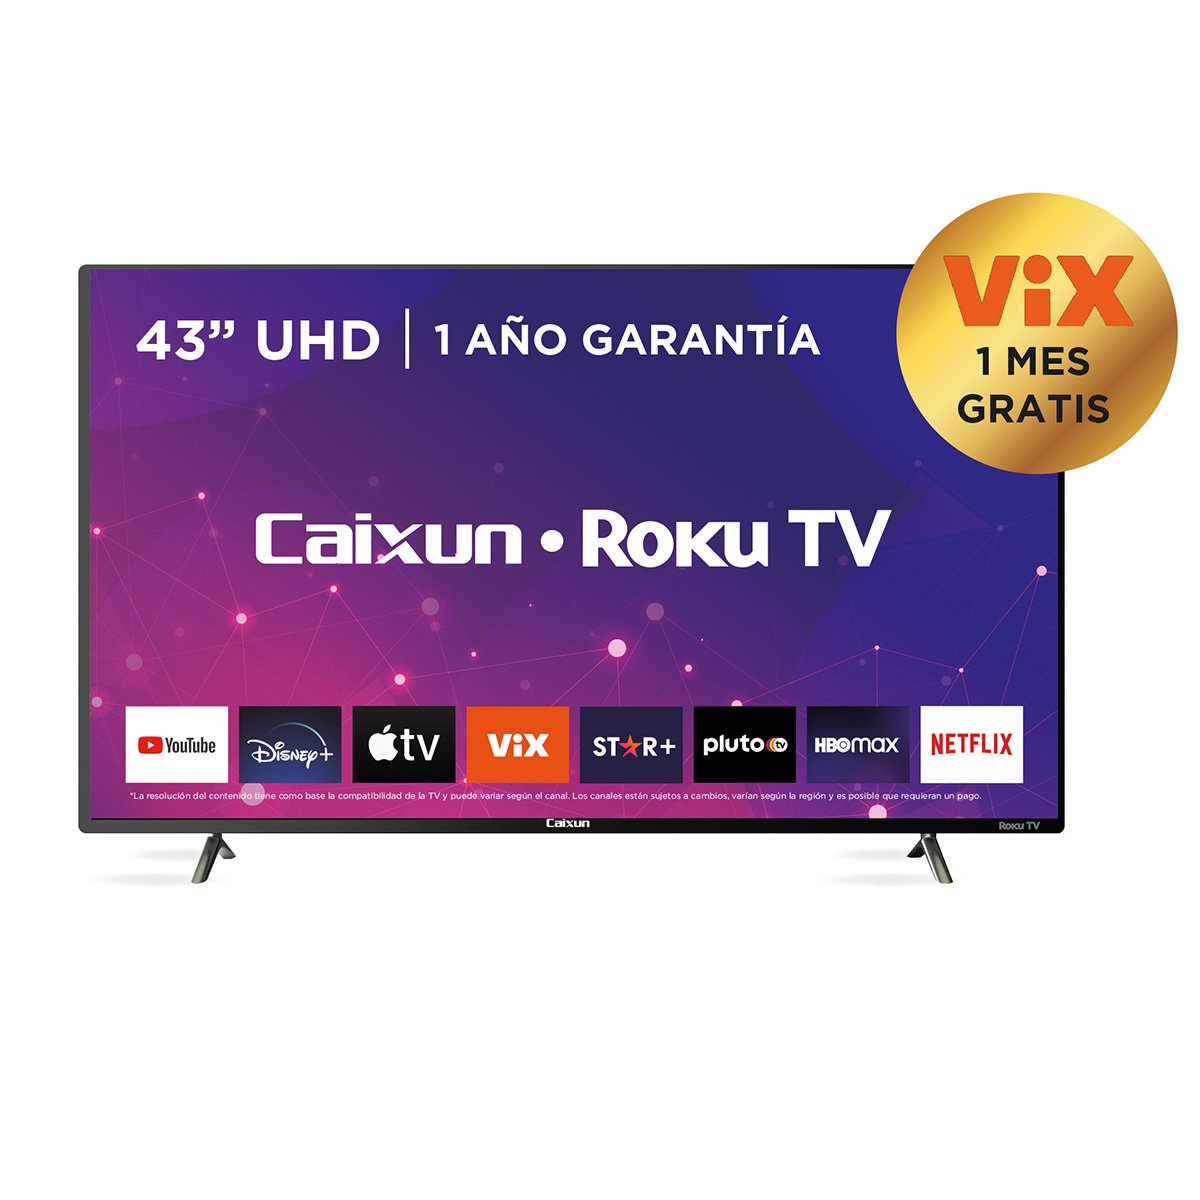 Roku TV - Caixun